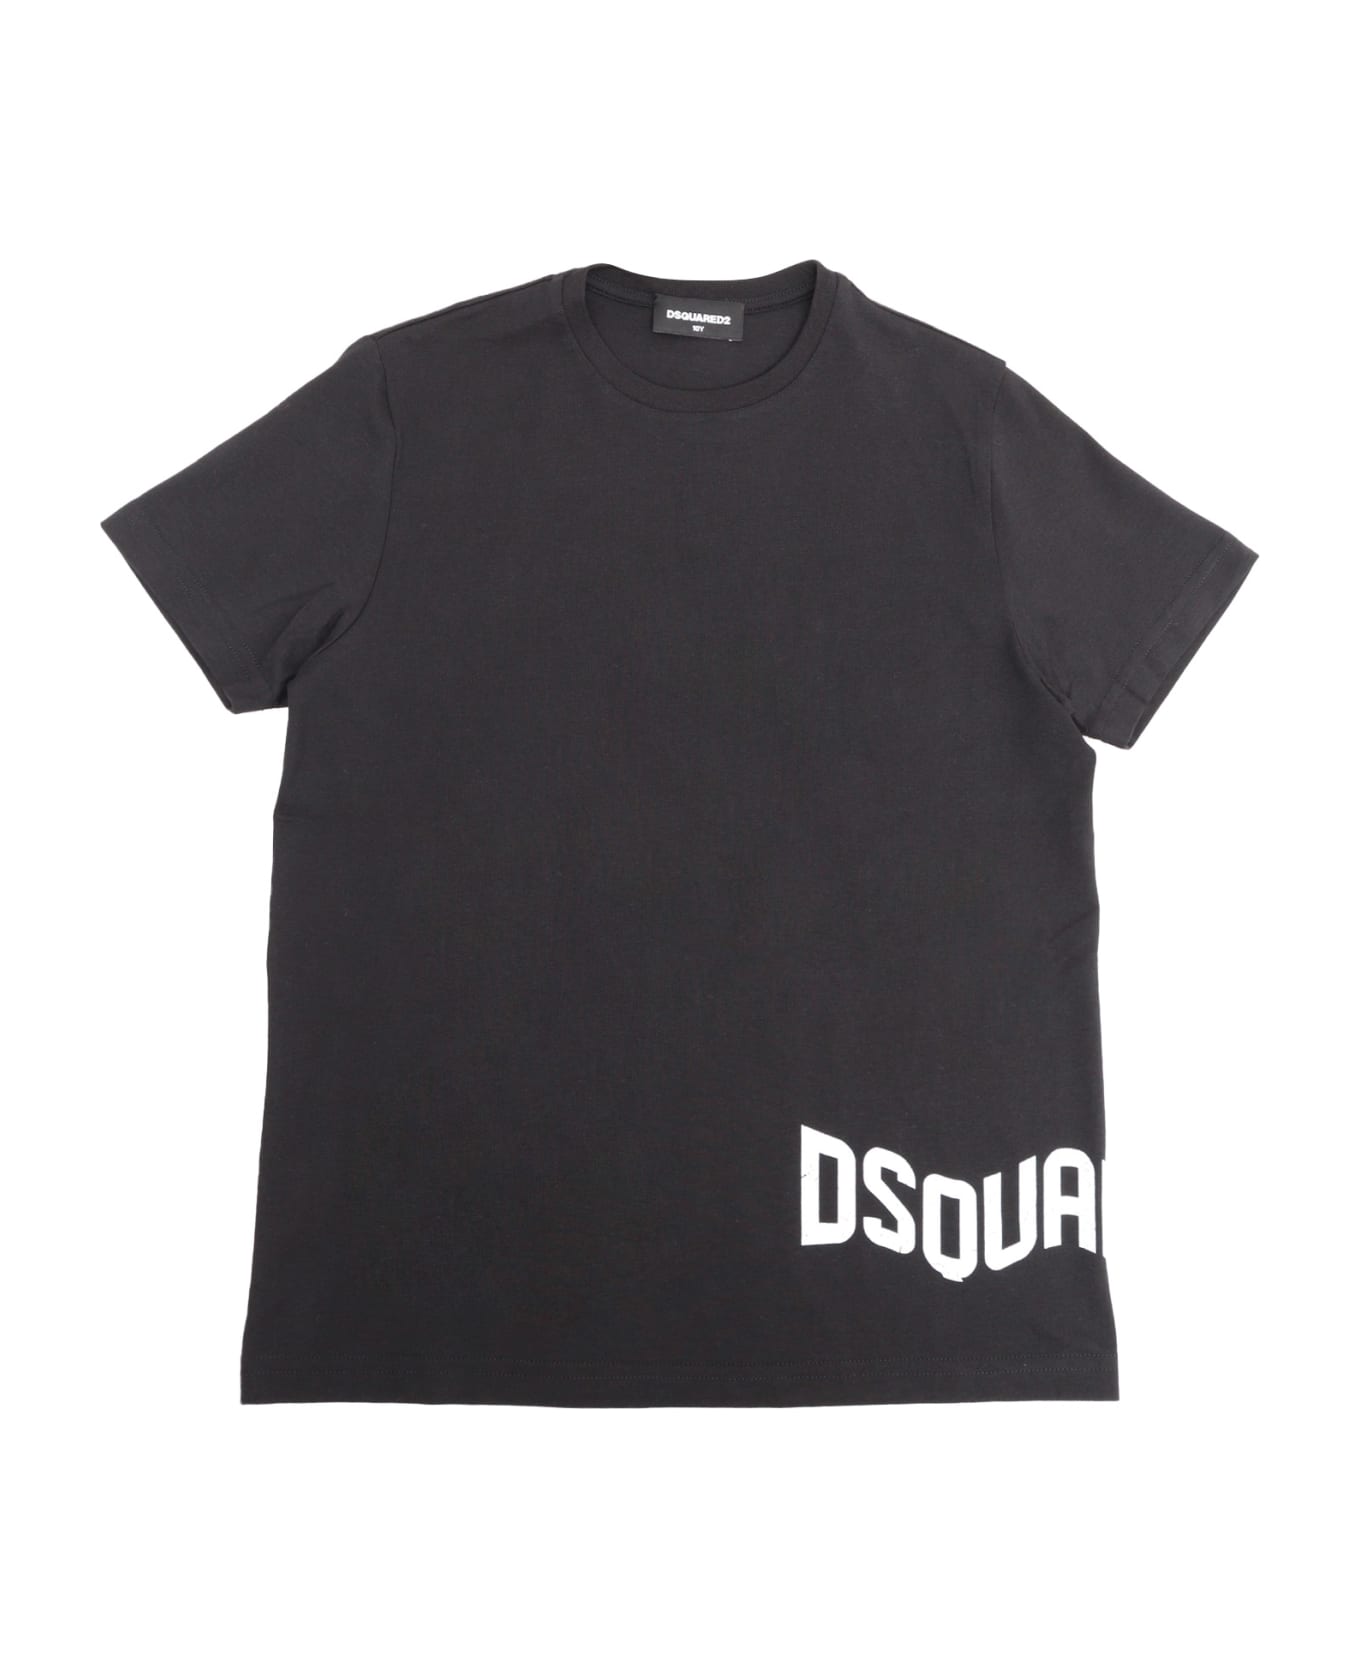 Dsquared2 D-squared2 T-shirt - BLACK